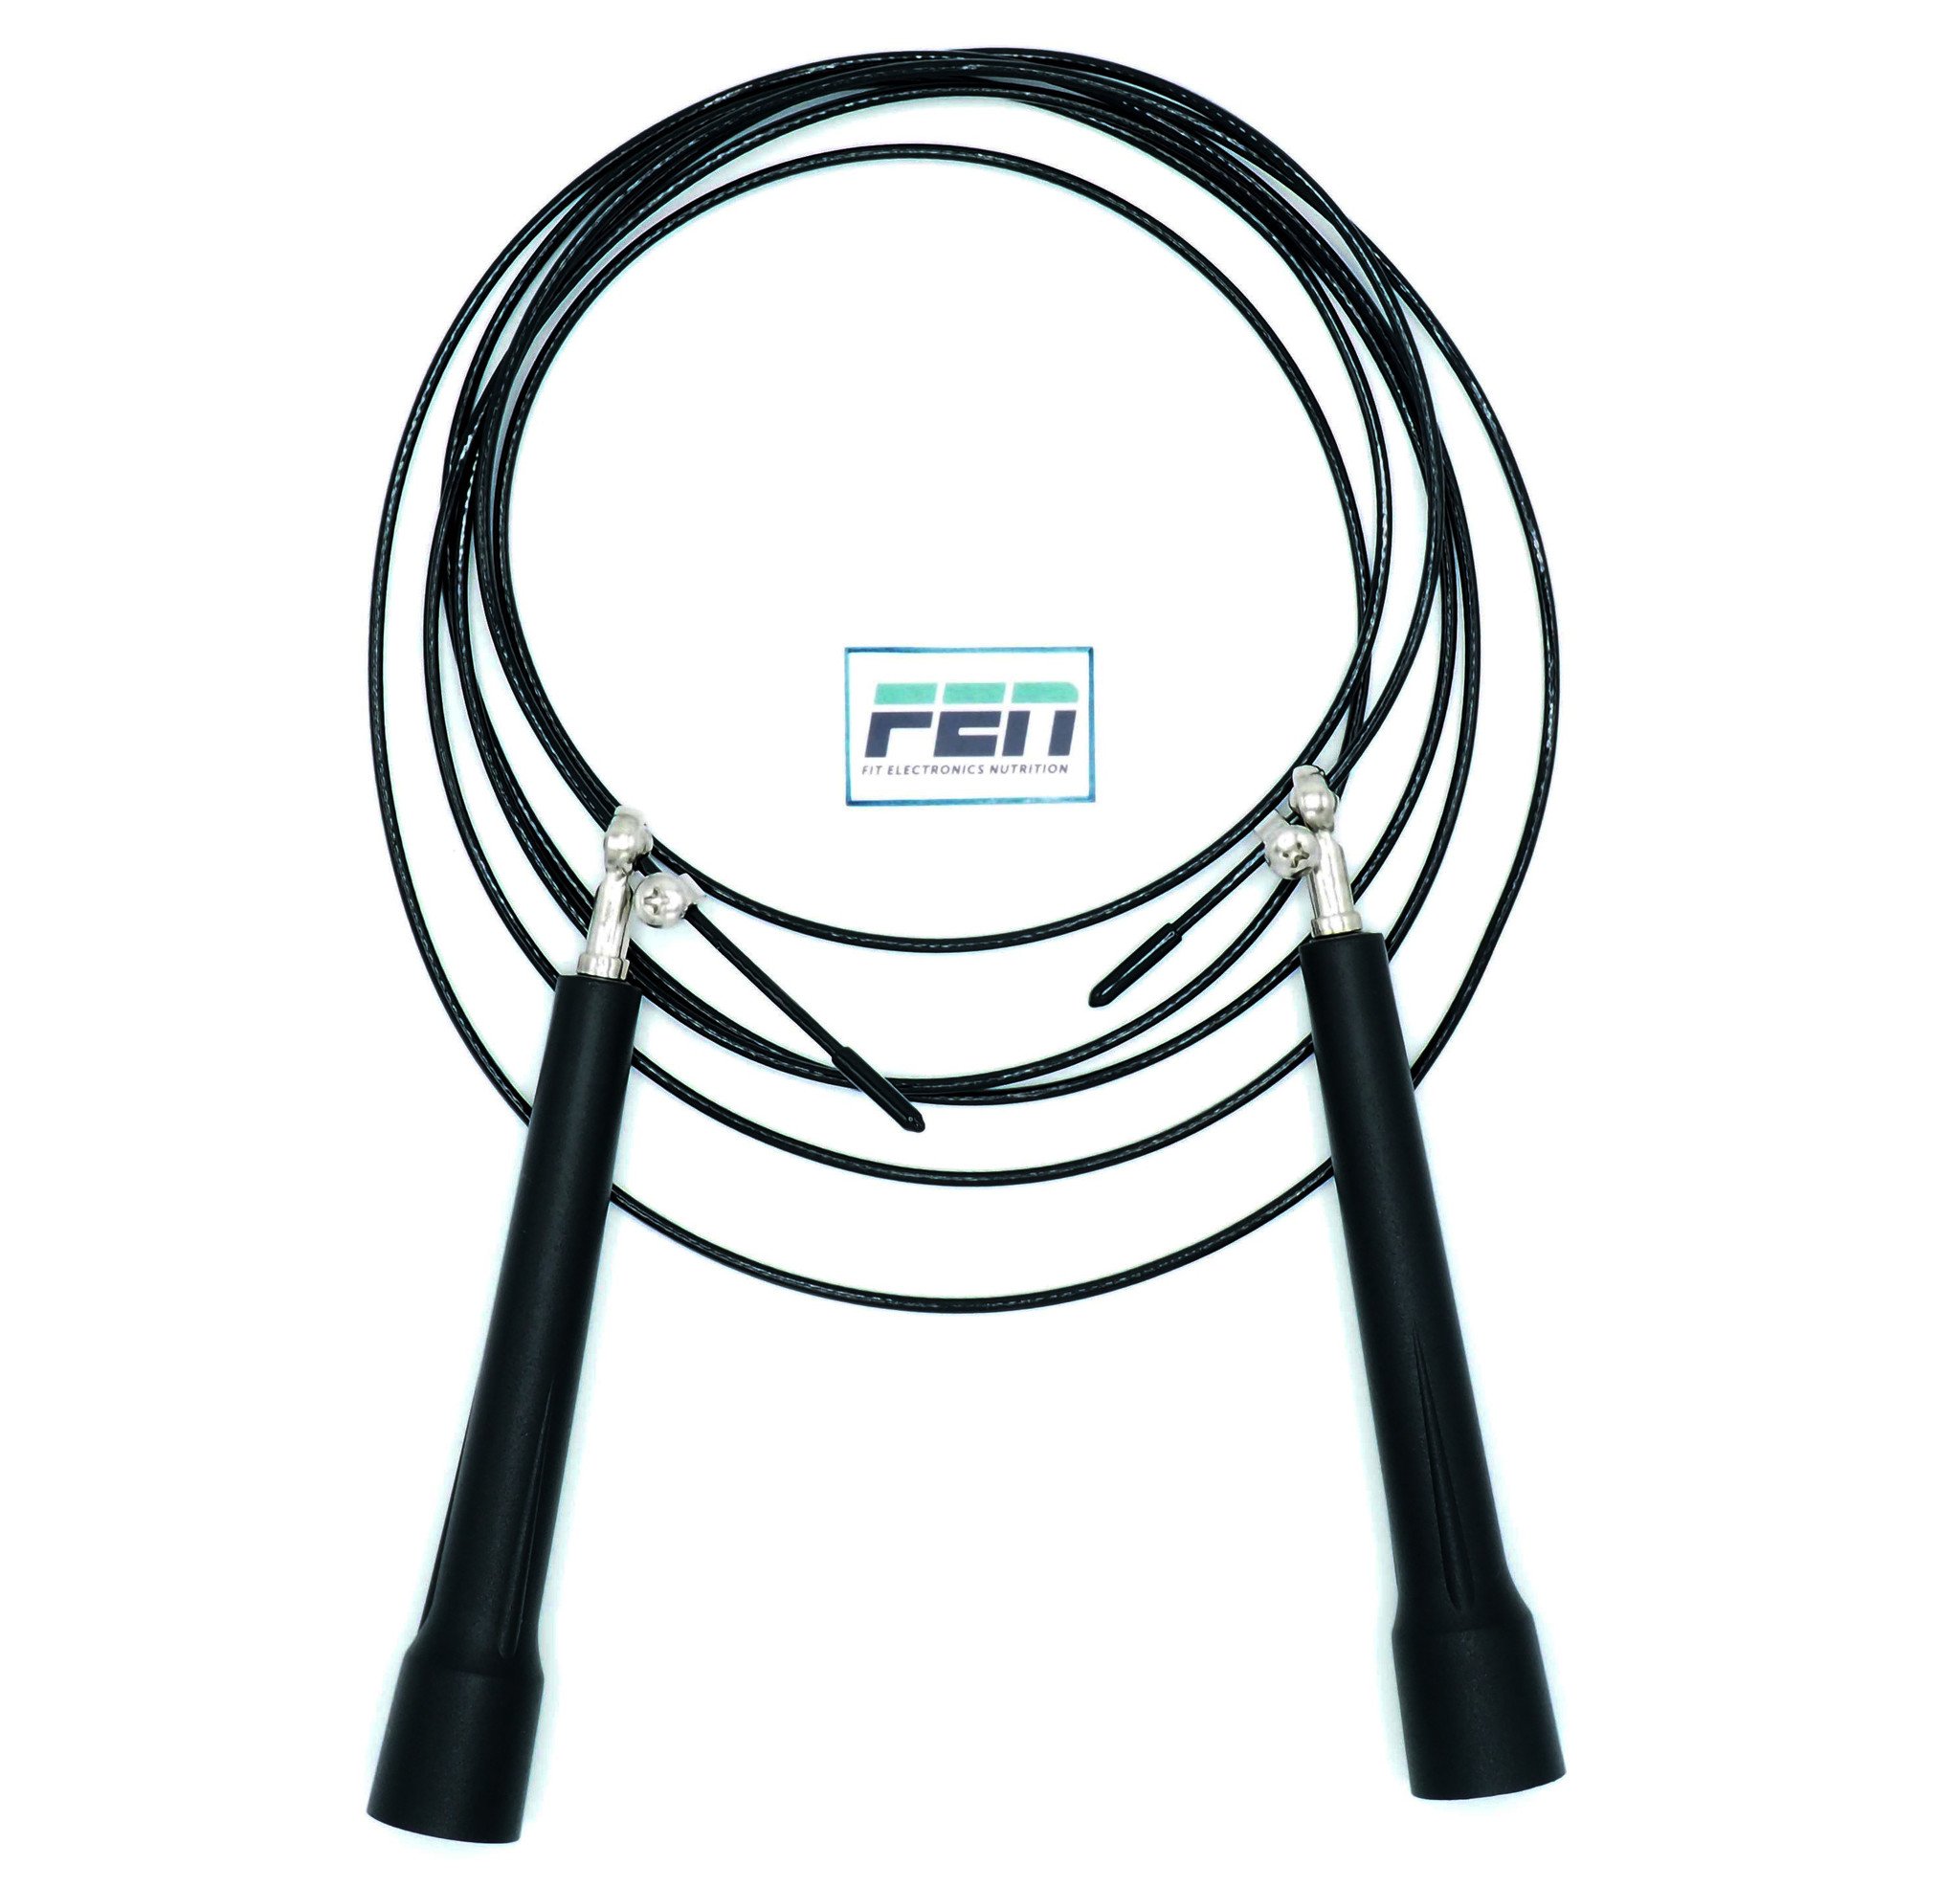 Springtouw Zwart Plastic – basic springtouw – verstelbare kabel – kogellagers – geschikt voor crossfit, fitness hometraining - Fen-company